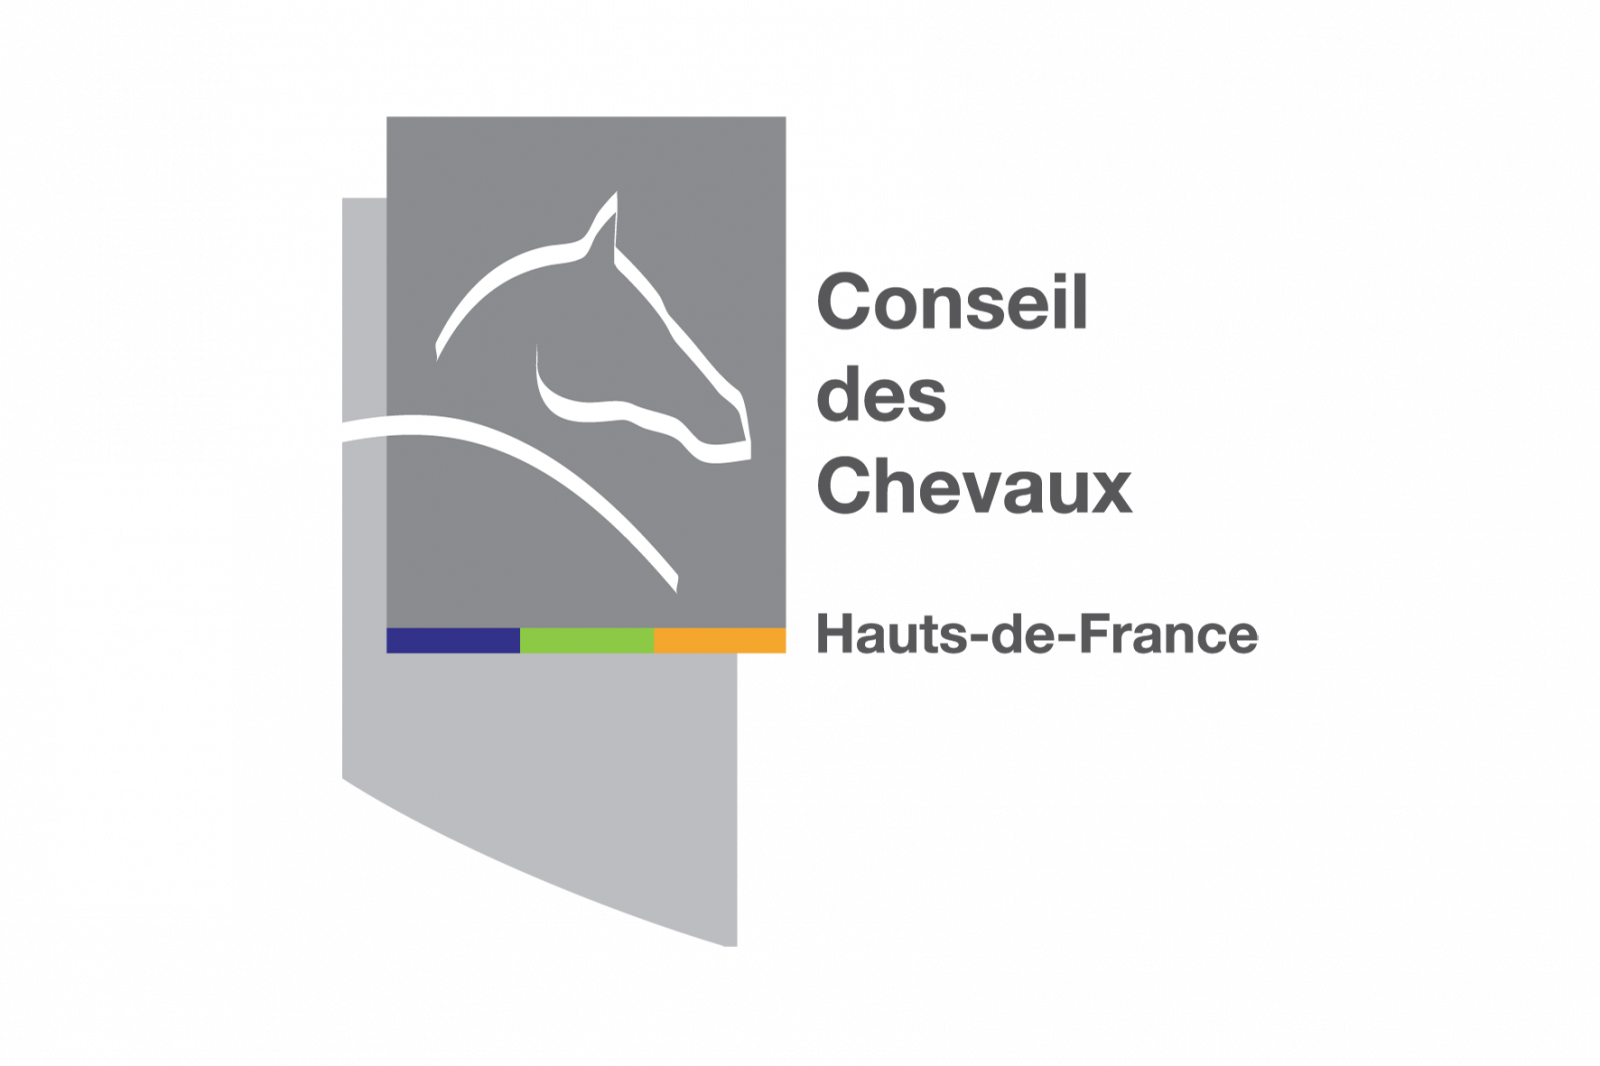 ConseilsChevaux_Logo-1.png